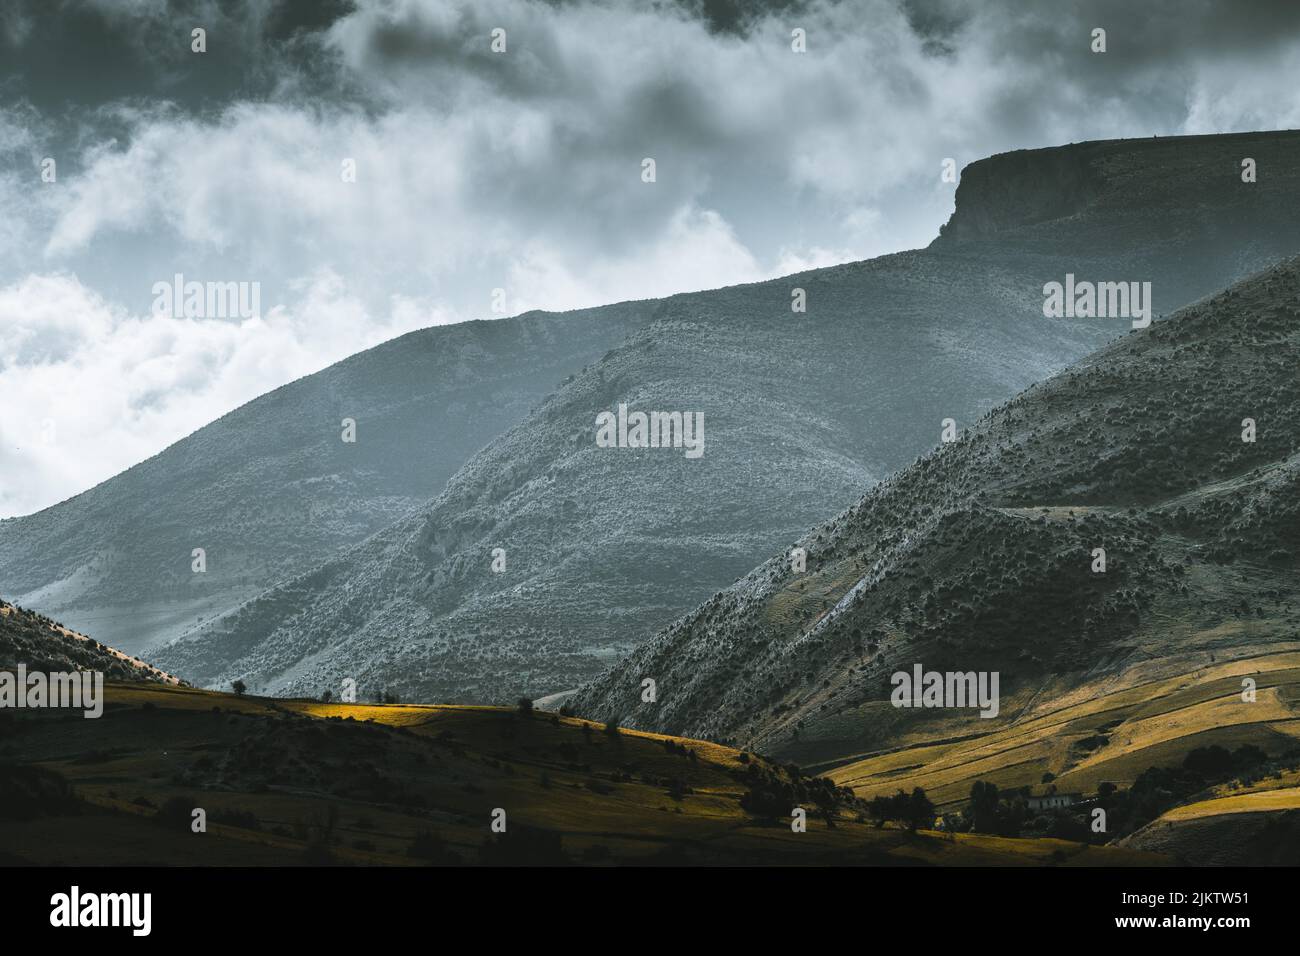 Eine friedliche Berglandschaft vor dem Hintergrund eines dramatisch bewölkten Himmels Stockfoto